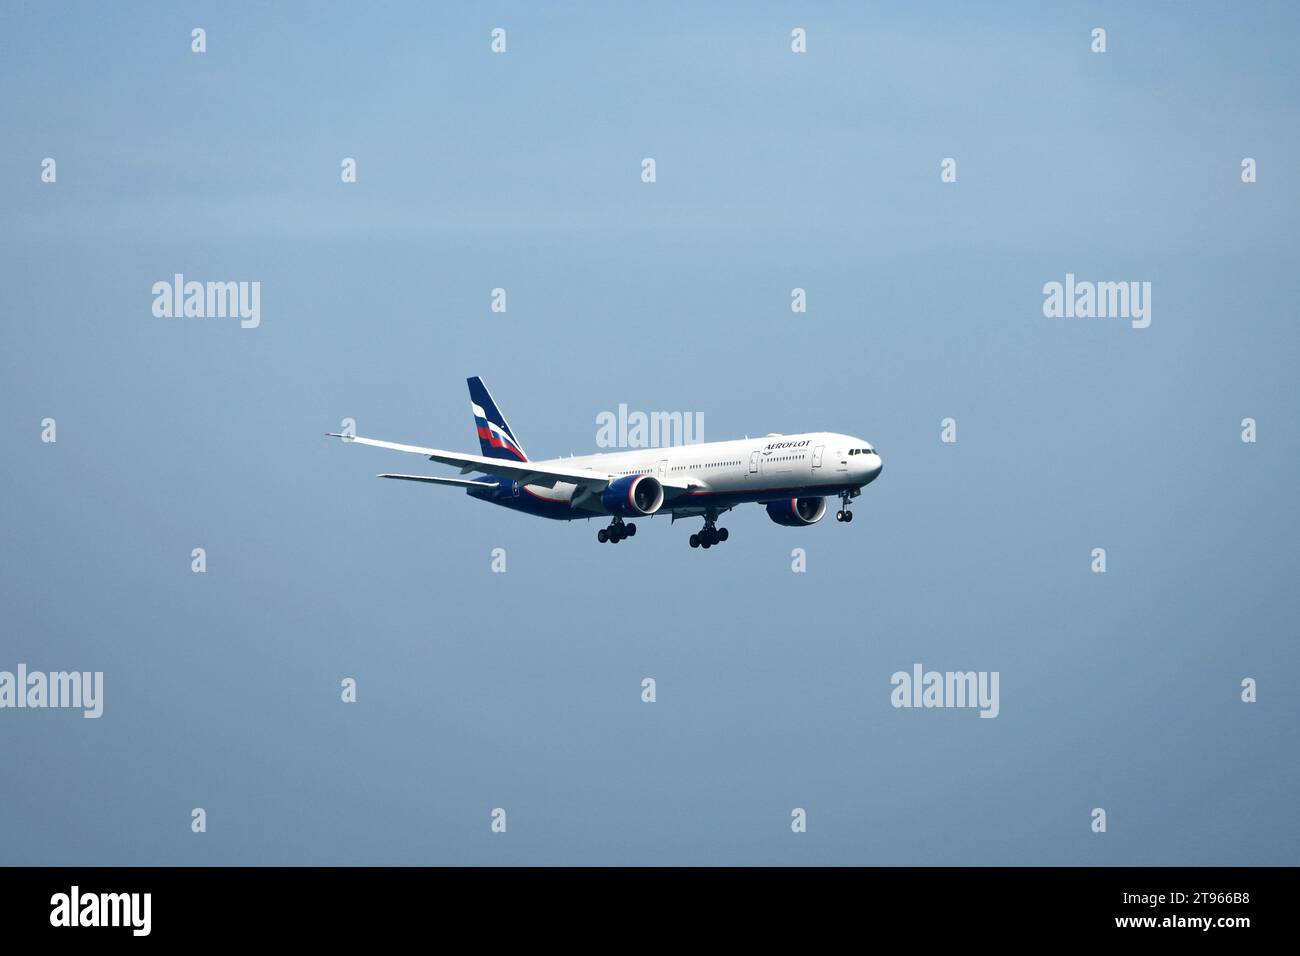 Aereo della compagnia aerea Aeroflot in volo sullo sfondo del cielo blu Foto Stock